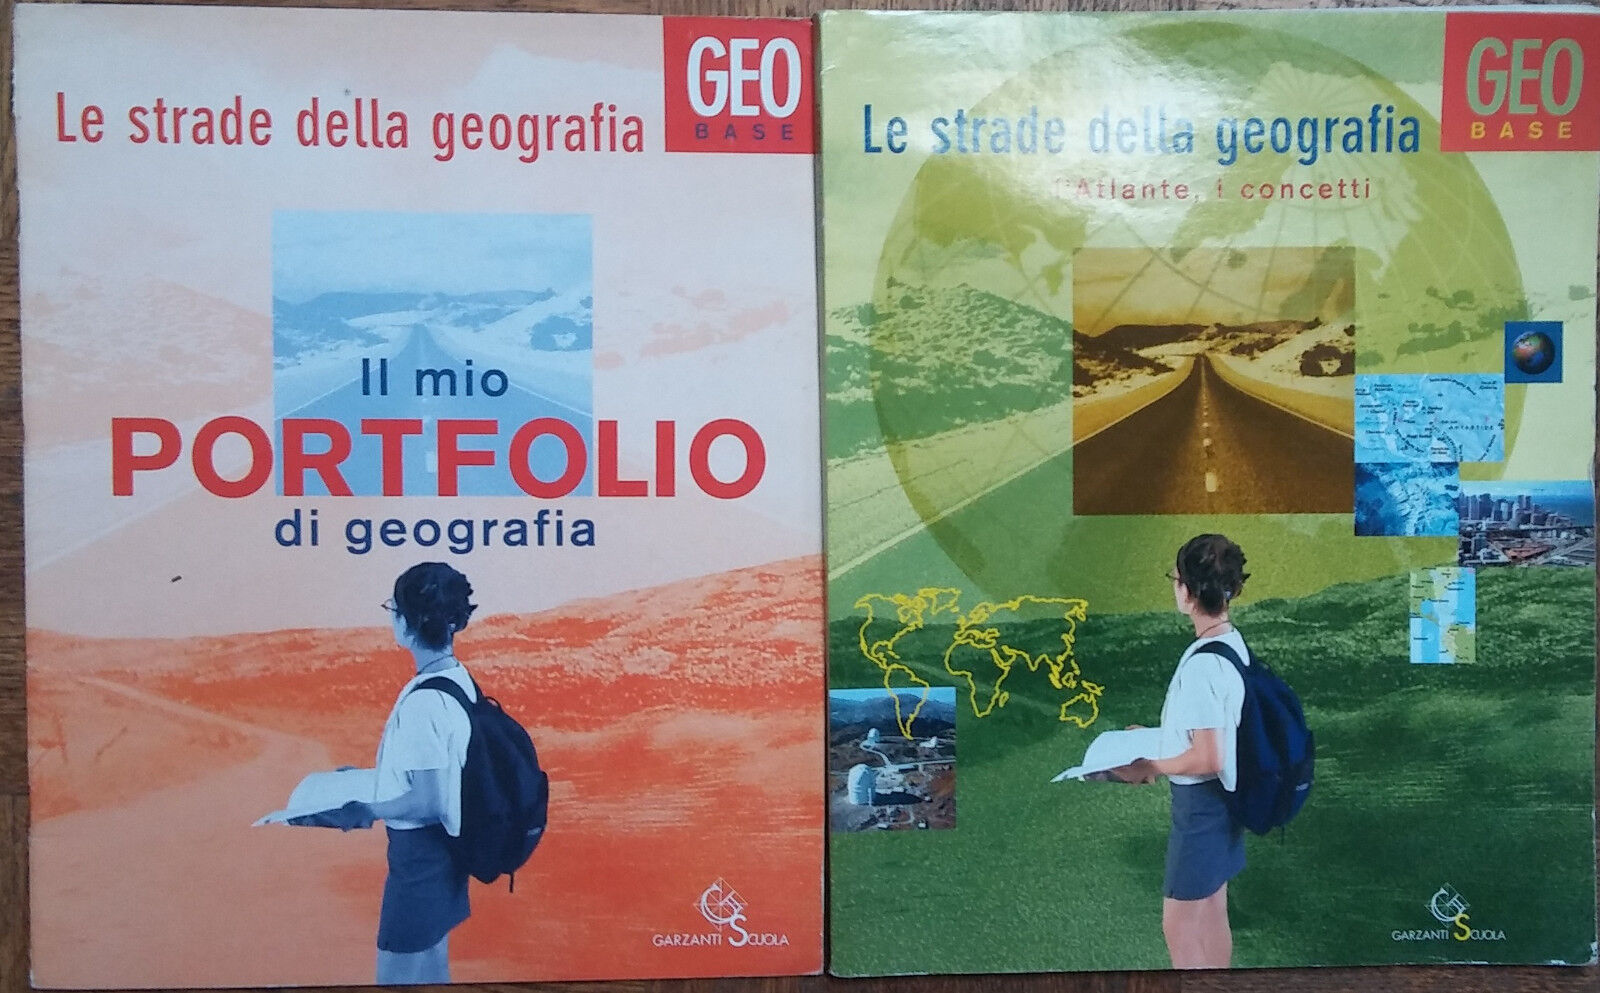 Le strade della geografia Geobase-Ardito,Carta,De Marco-Garzanti Scuola,2004-R